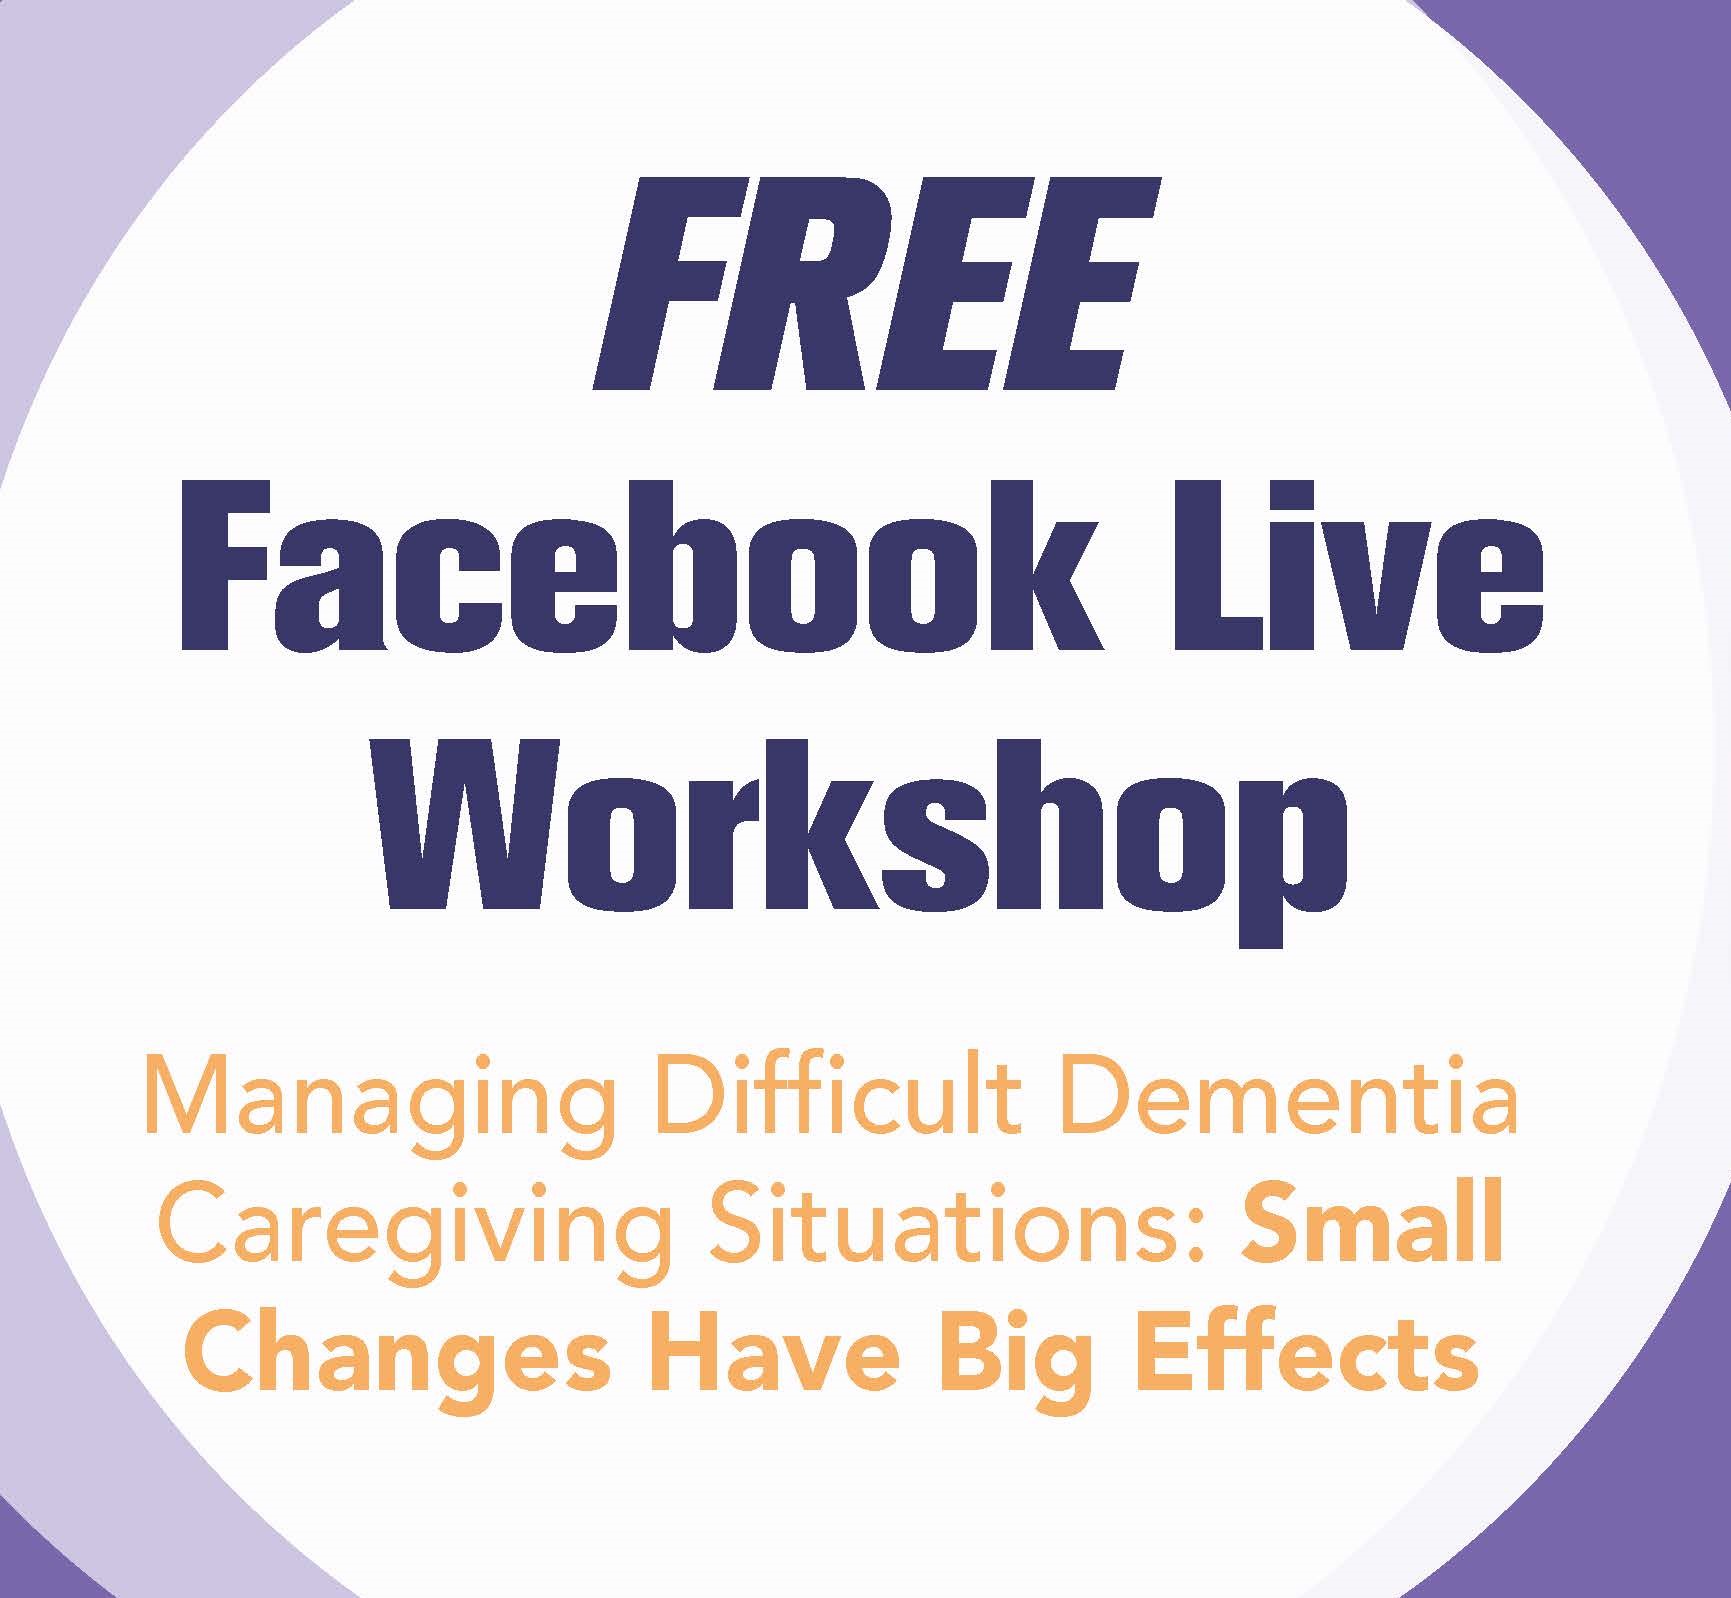 Free Facebook Live Workshop